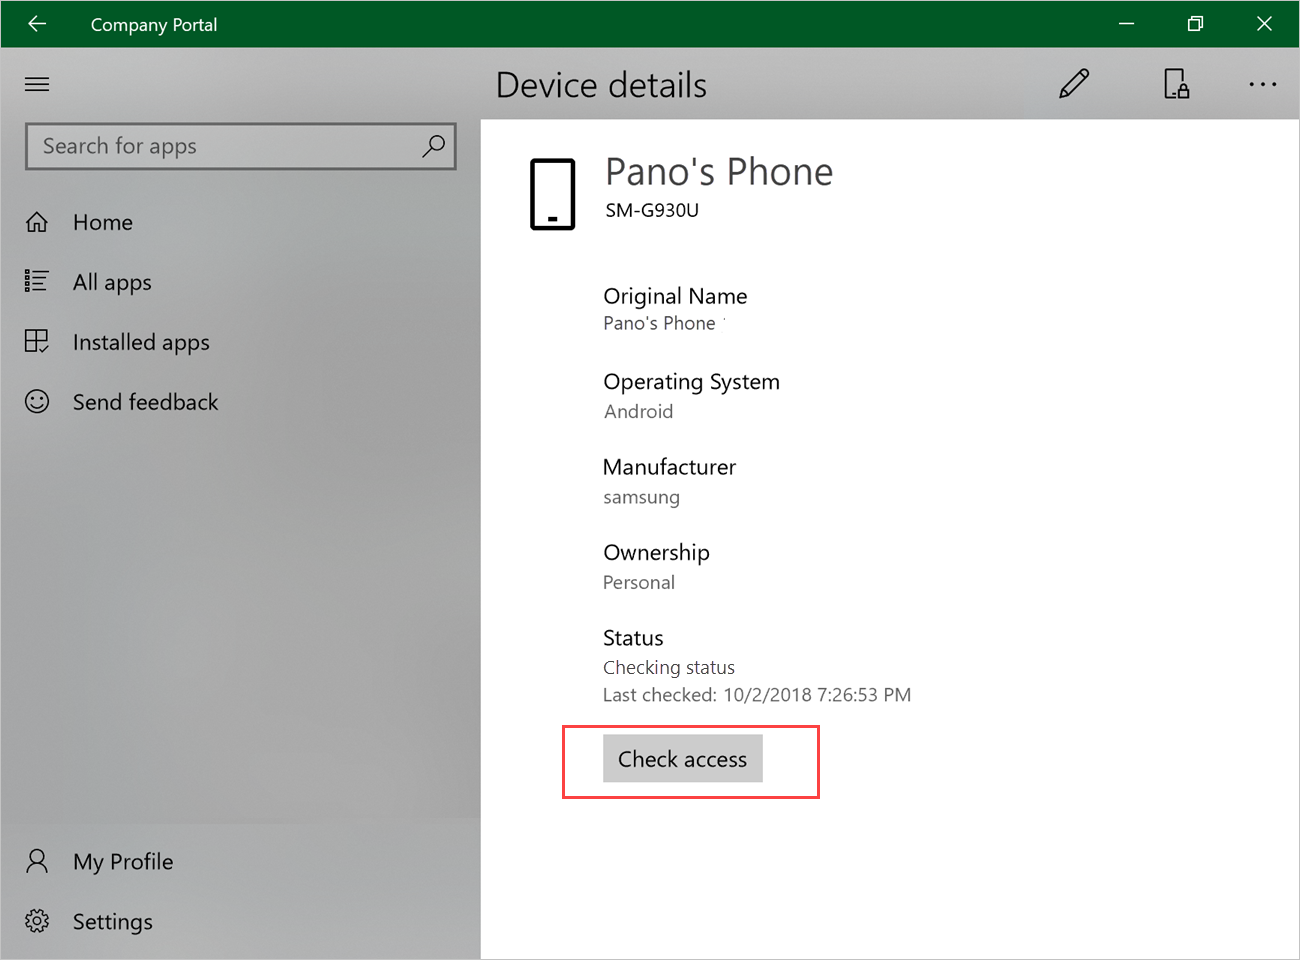 Captura de pantalla de ejemplo de la aplicación Portal de empresa para Windows, página Detalles del dispositivo, resaltando el botón Comprobar acceso.